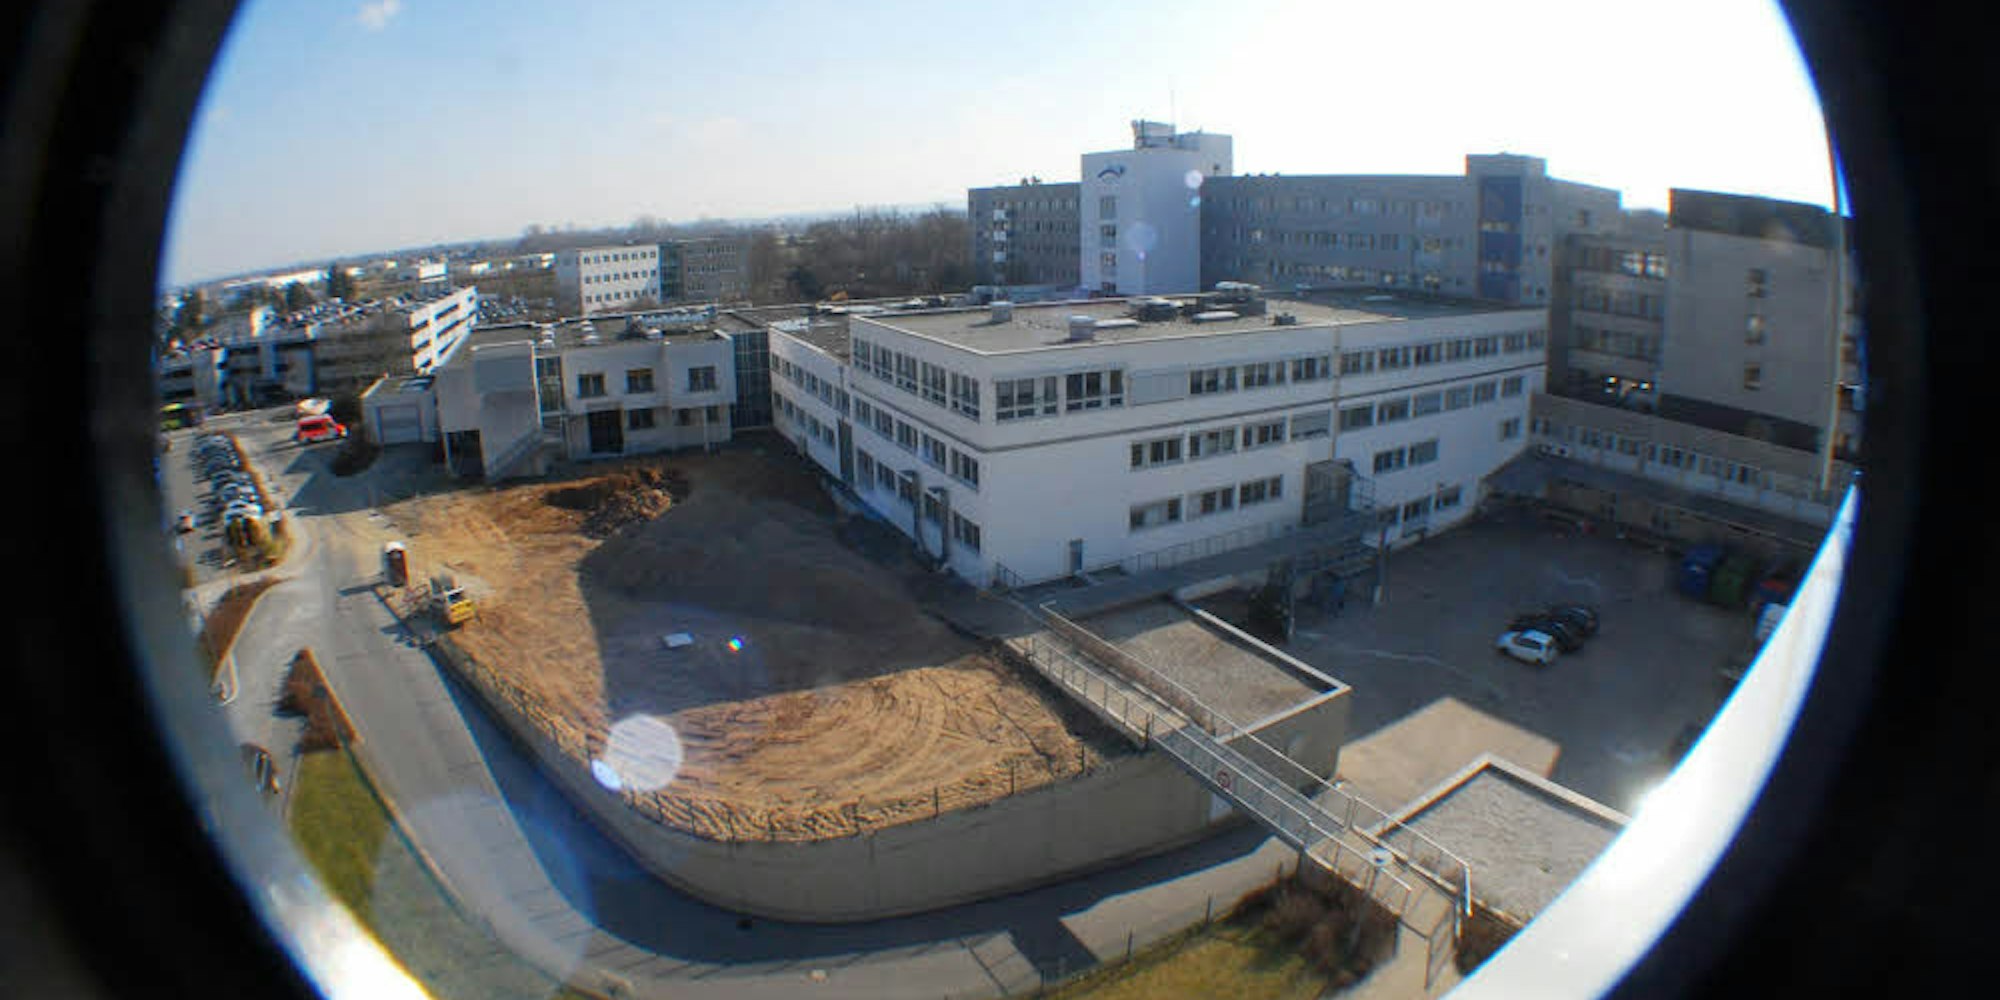 Das Marien-Hospital plant weitere Investitionen. Unter anderem soll der Operationstrakt erweitert werden.